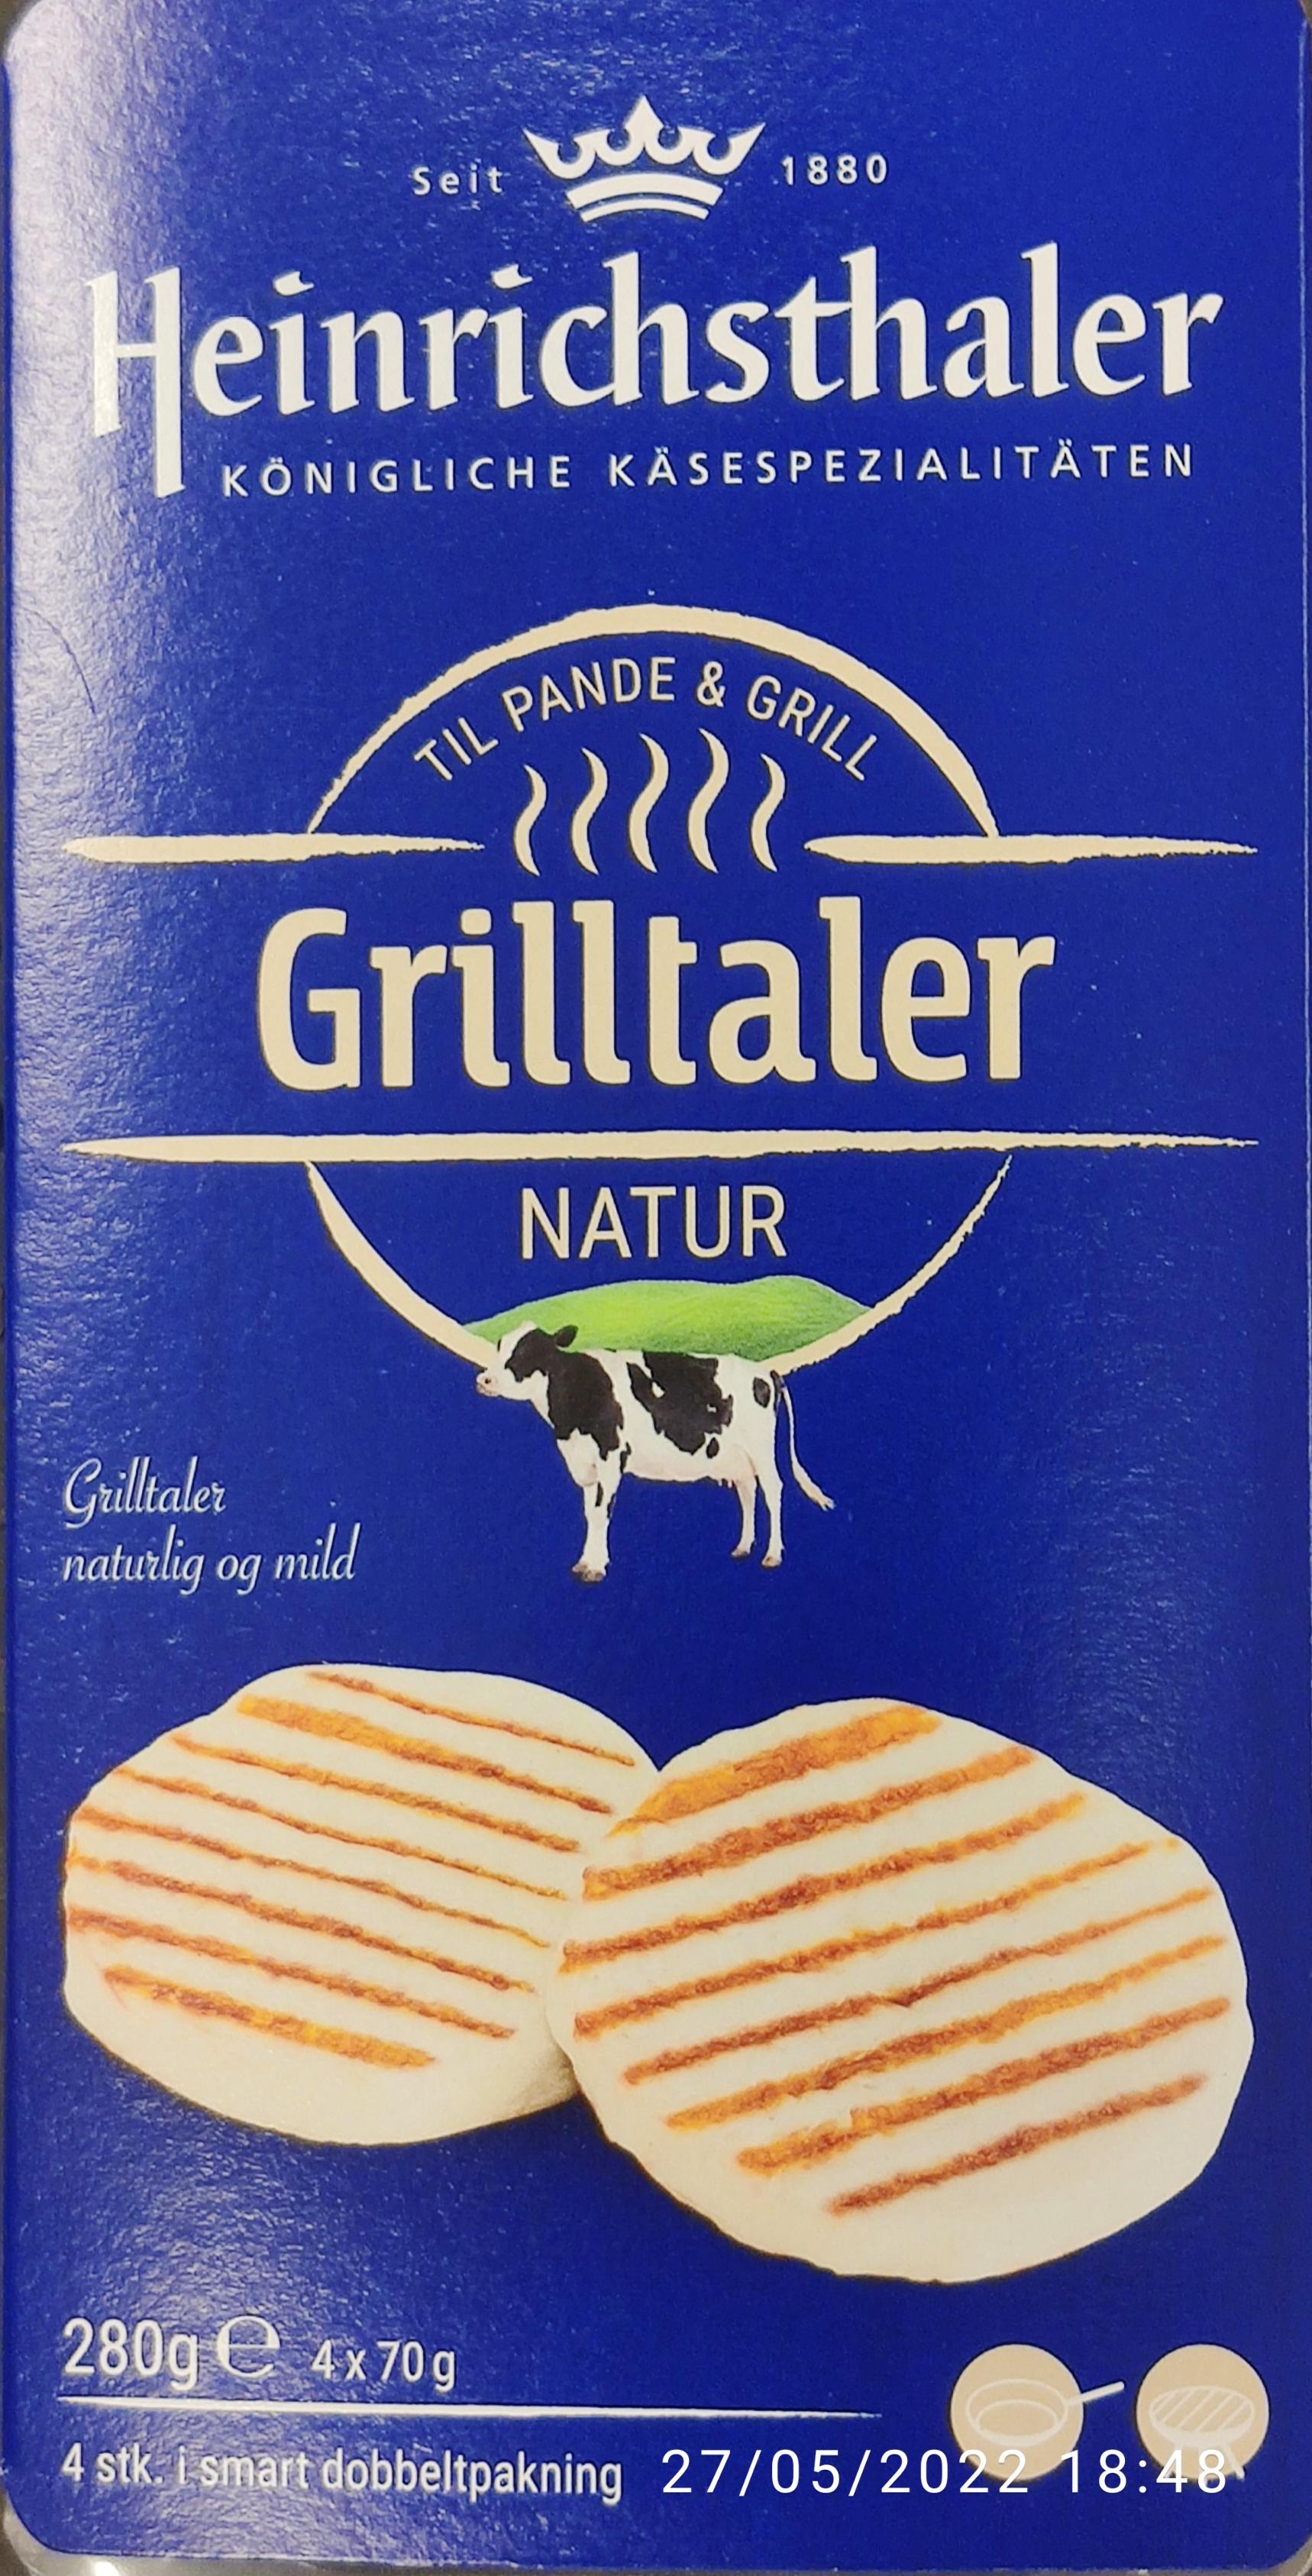 Grillost natur med ost 4x70g Heinrichsthaler - Ost og osteprodukter Fødevarer Vægttab.nu